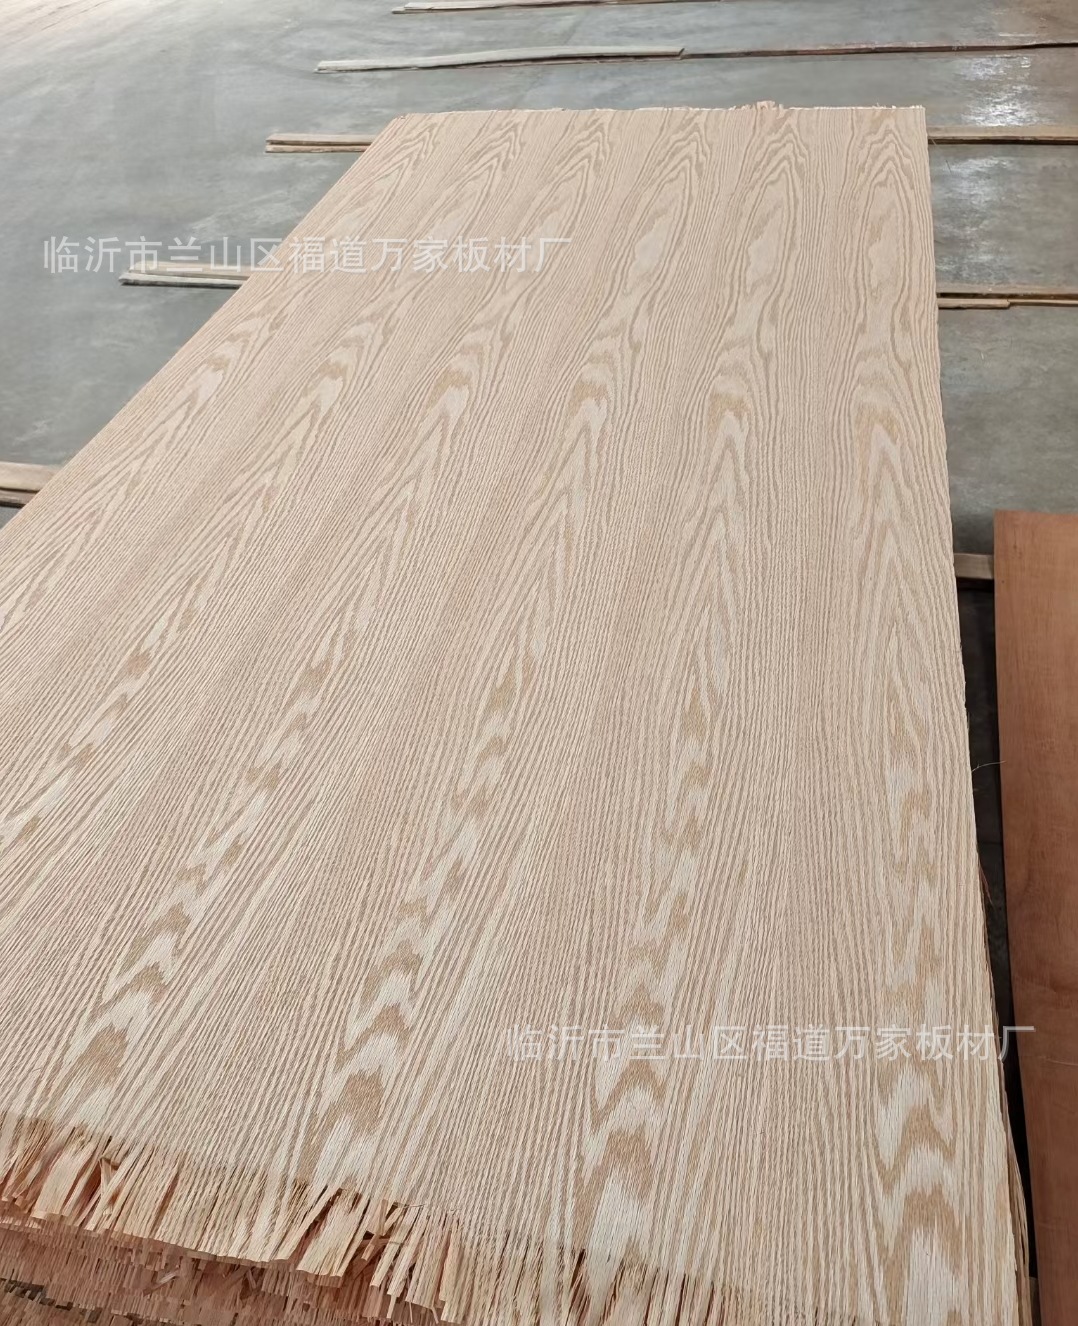 多层  密度板贴 实木天然木皮  家具板 工艺品  多功能用途板材